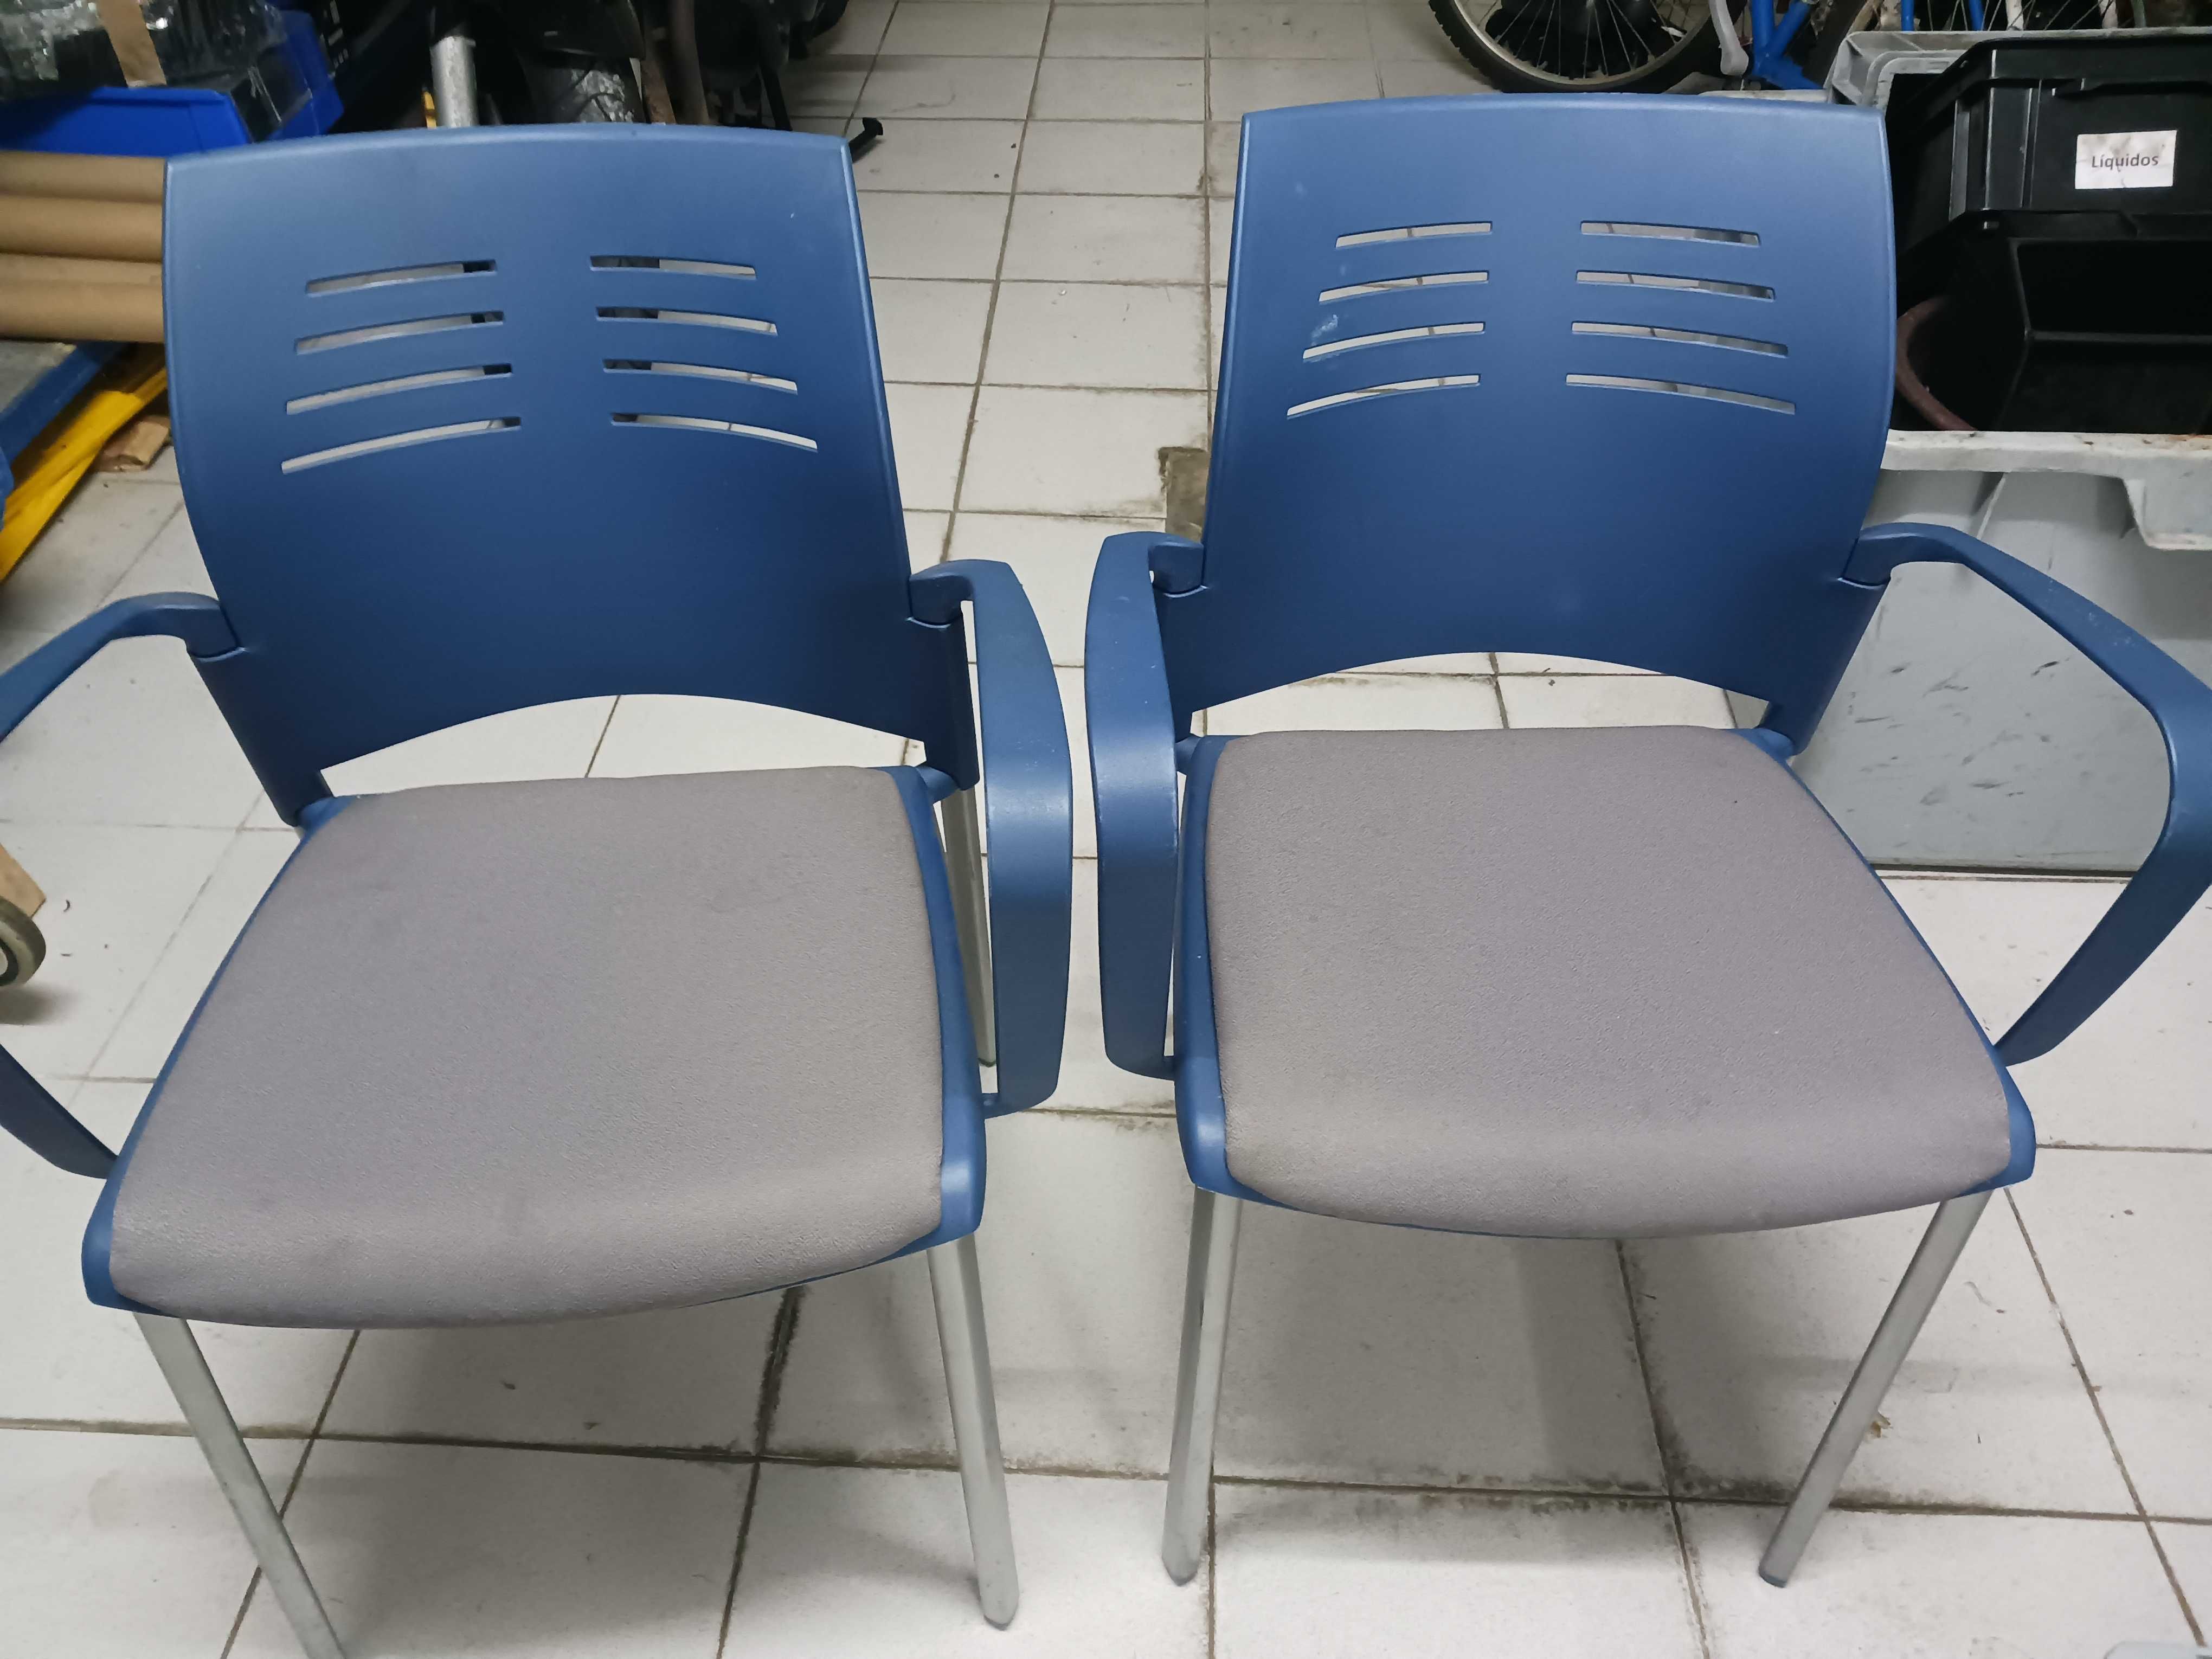 2 cadeiras usadas plastico / aluminio